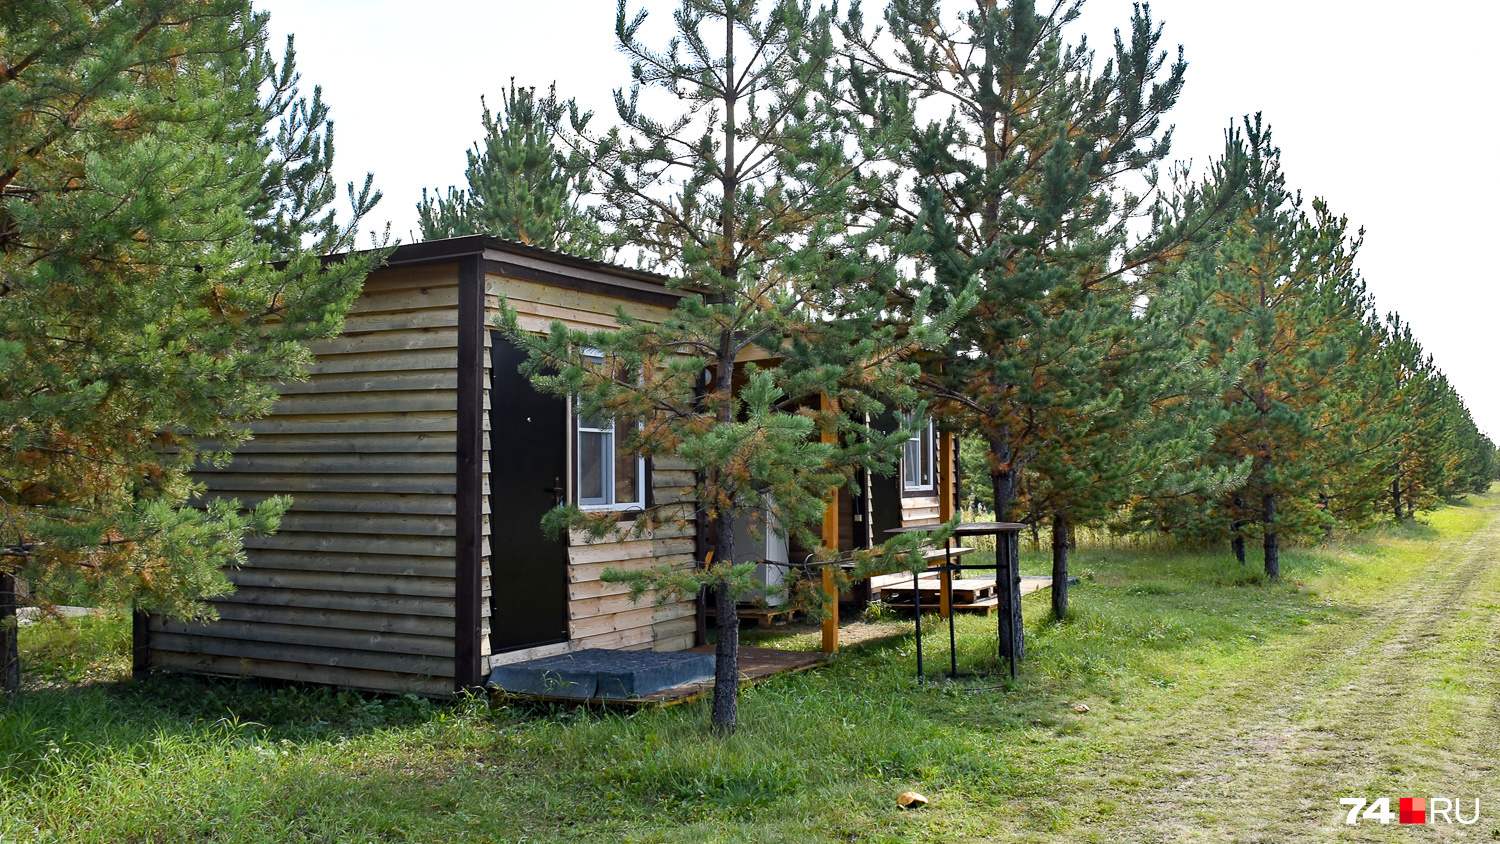 Гостевые мини-домики, в которые помещается кровать и пара тумбочек. Кухня — летняя